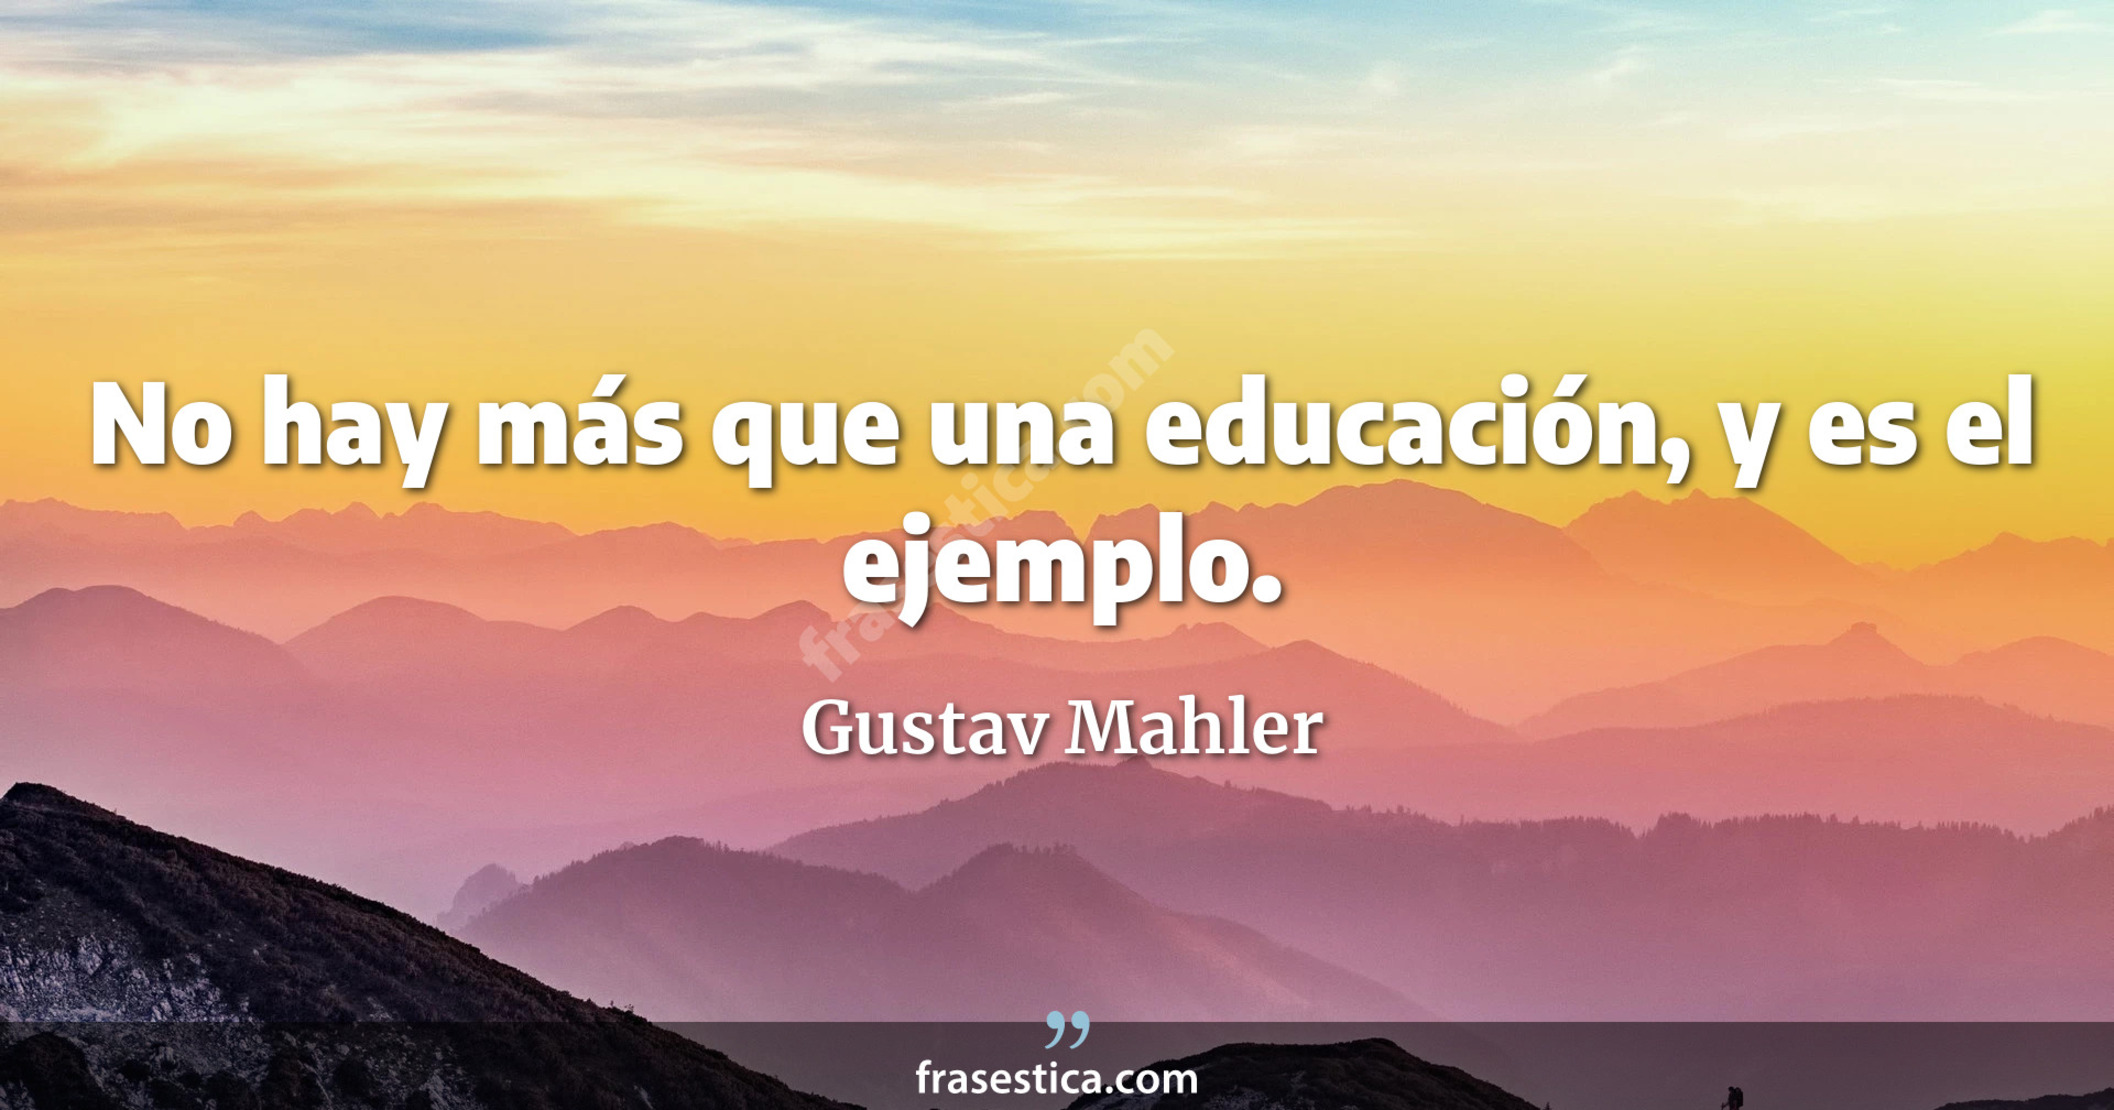 No hay más que una educación, y es el ejemplo. - Gustav Mahler